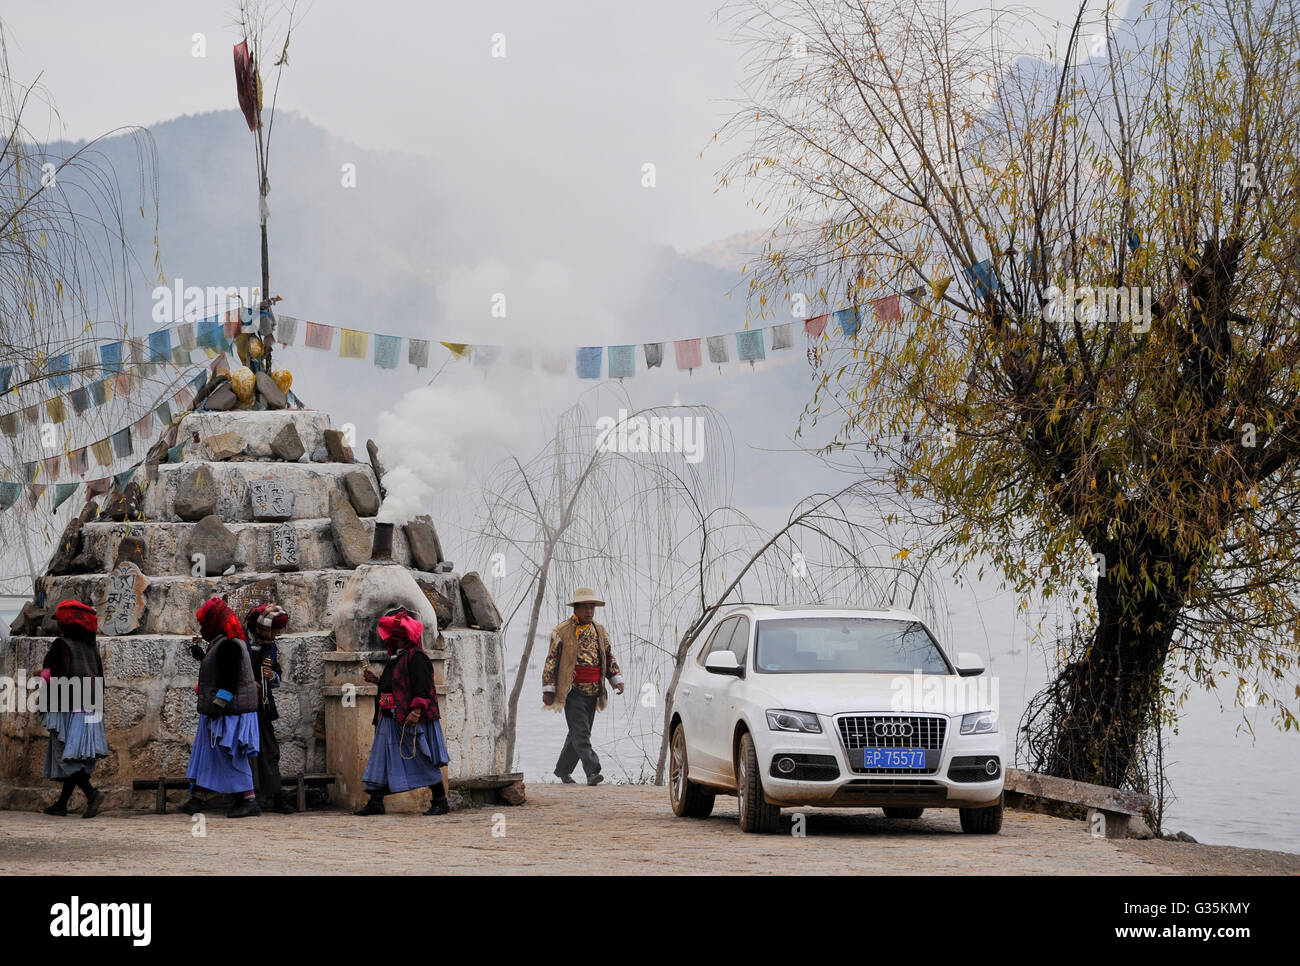 CHINA Yunnan, Lugu Lake Mosuo, die ethnischen Minderheiten angehören, die buddhistischen und Frauen haben eine Matriarchin, buddhistische Mosuo Frauen mit Gebet Mühle Surround buddhistischen Schrein am Lugu See, von einer pipe Räucherstäbchen Rauch steigt, neben weißen Audi Auto mit chinesischen Nummernschild Stockfoto